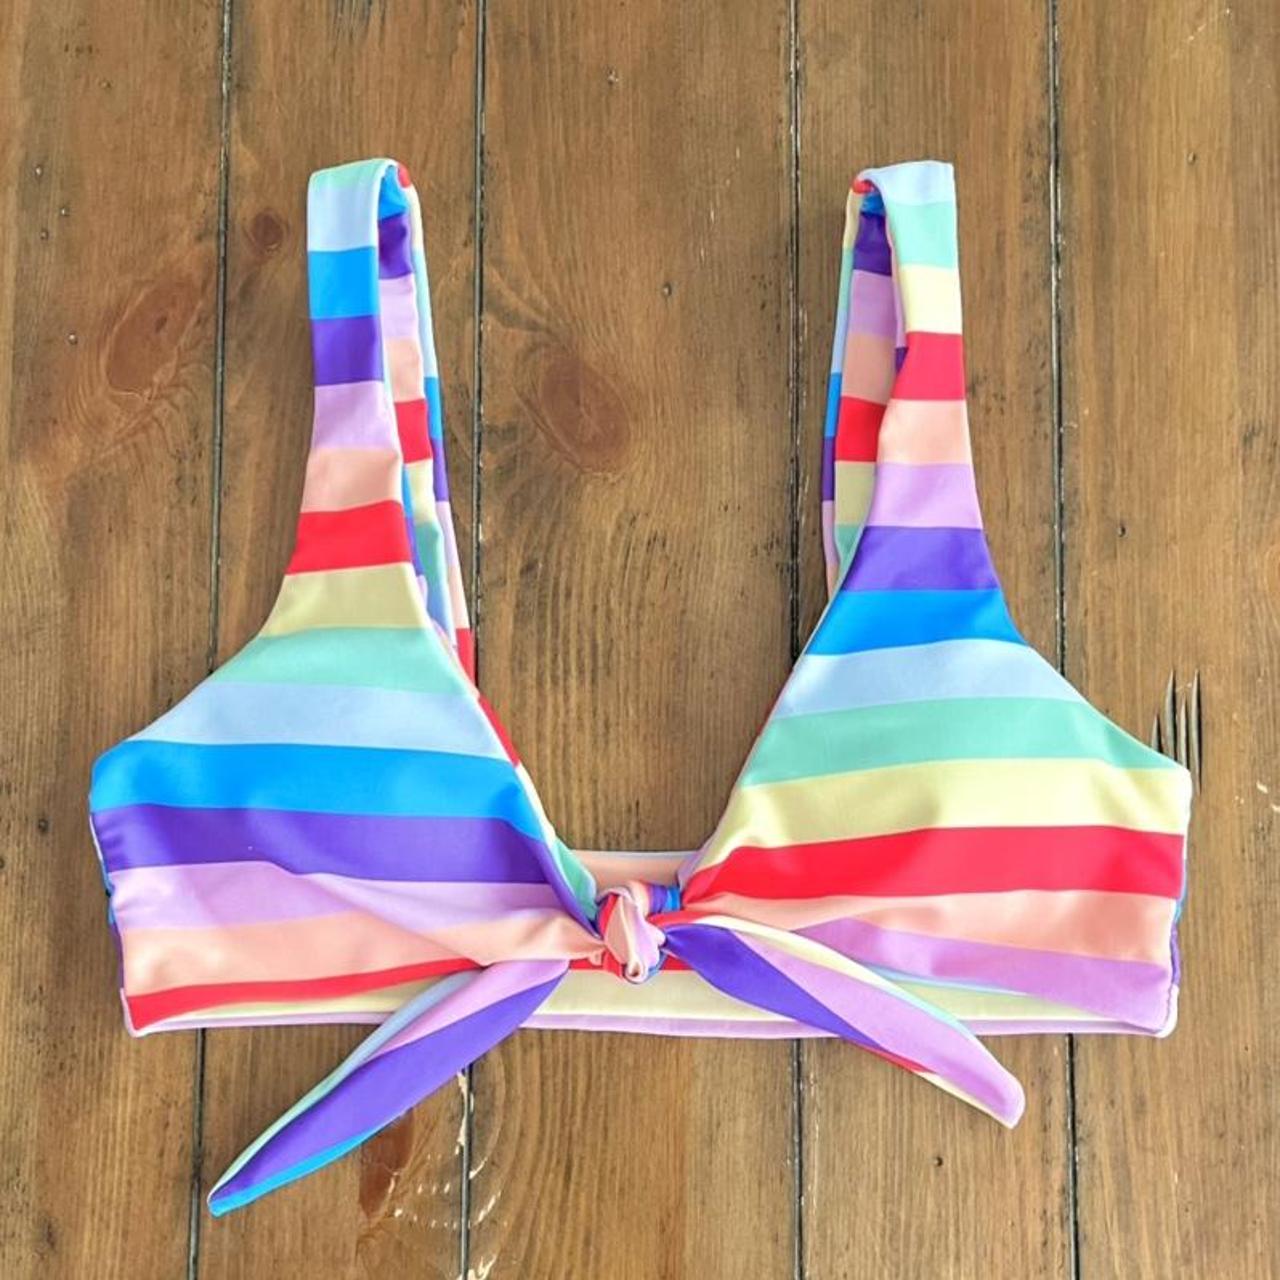 Zaful Rainbow Bikini Top. Women's Size Medium. Fits - Depop